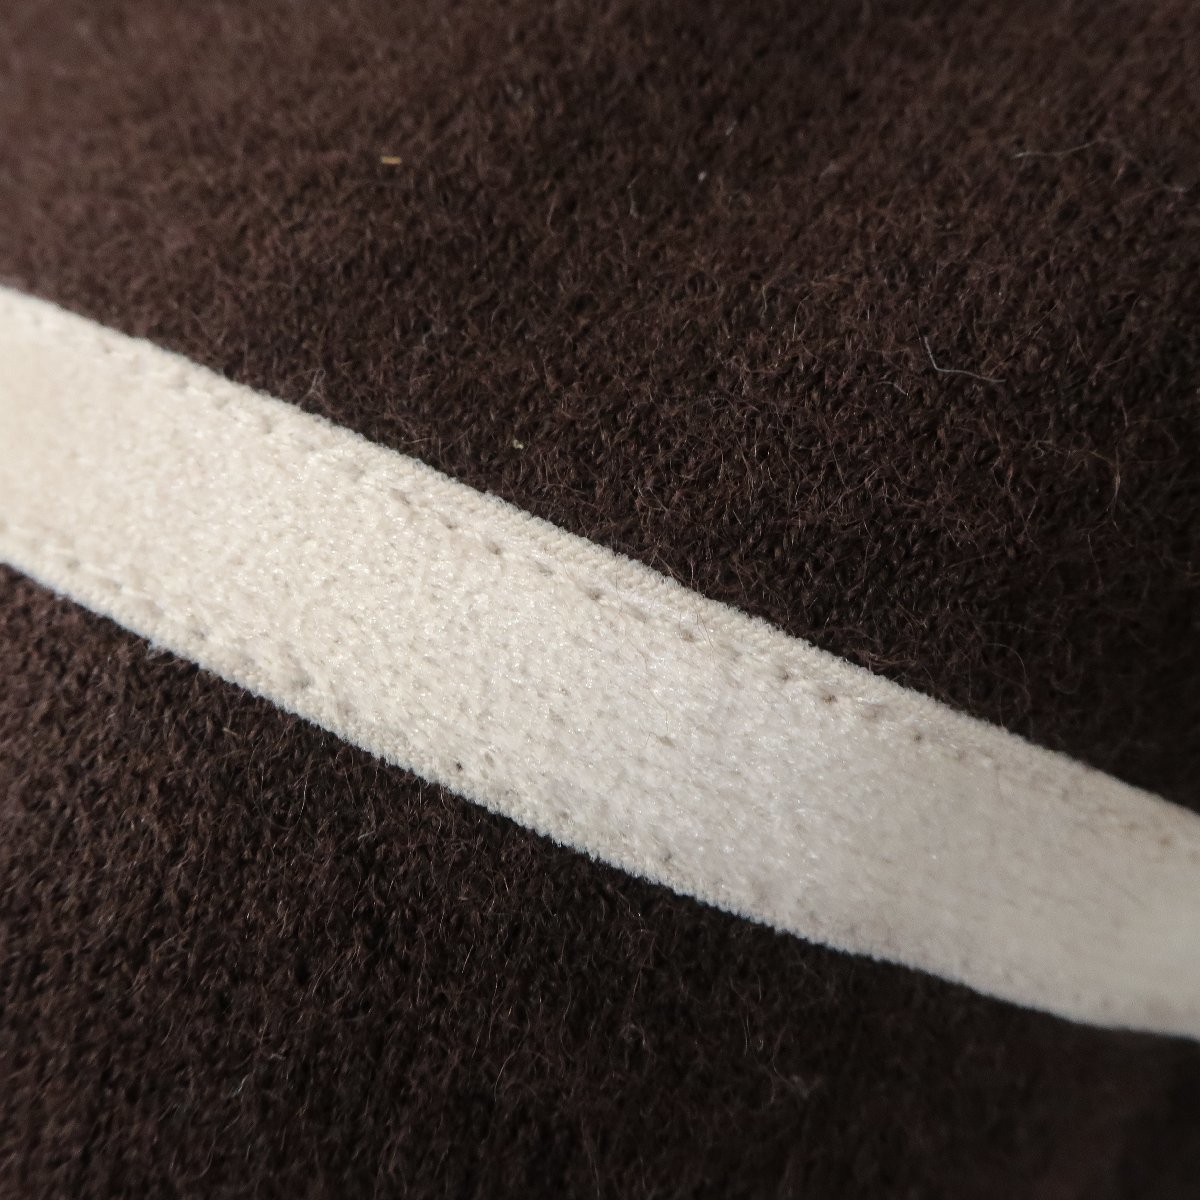  ef-de * sweater short sleeves ta-toru neck size 9 cute . ribbon! tender wool & Anne gola. light brown group z4495